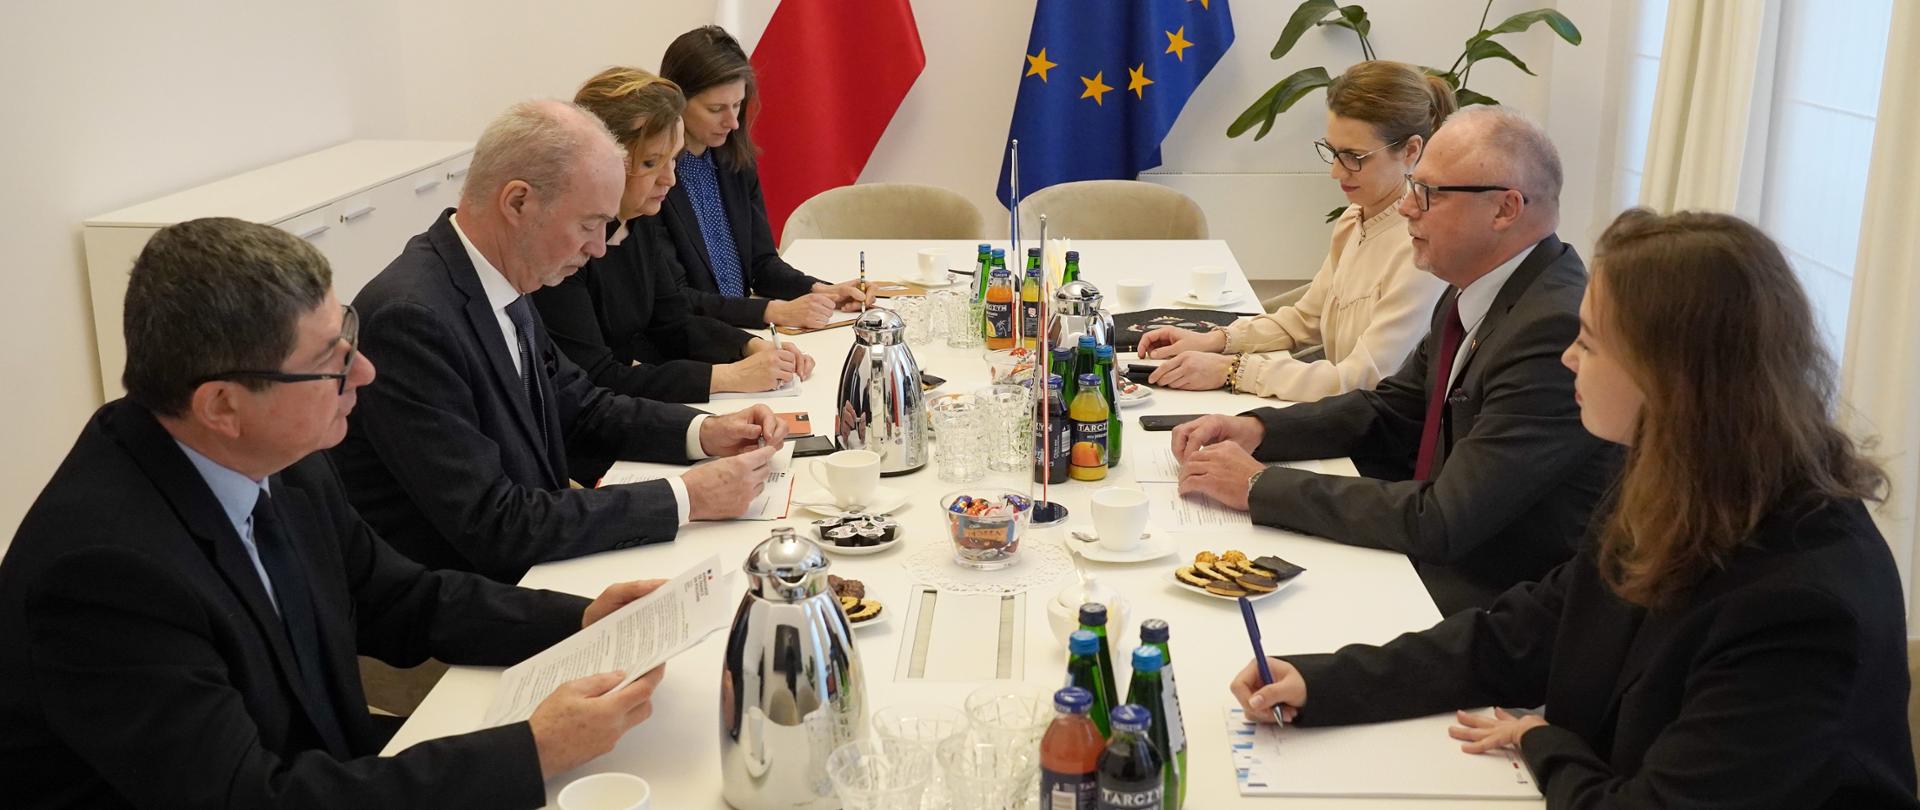 Grupa osób siedzi na wprost siebie przy stole. Przy ścianie flagi Polski i Francji.